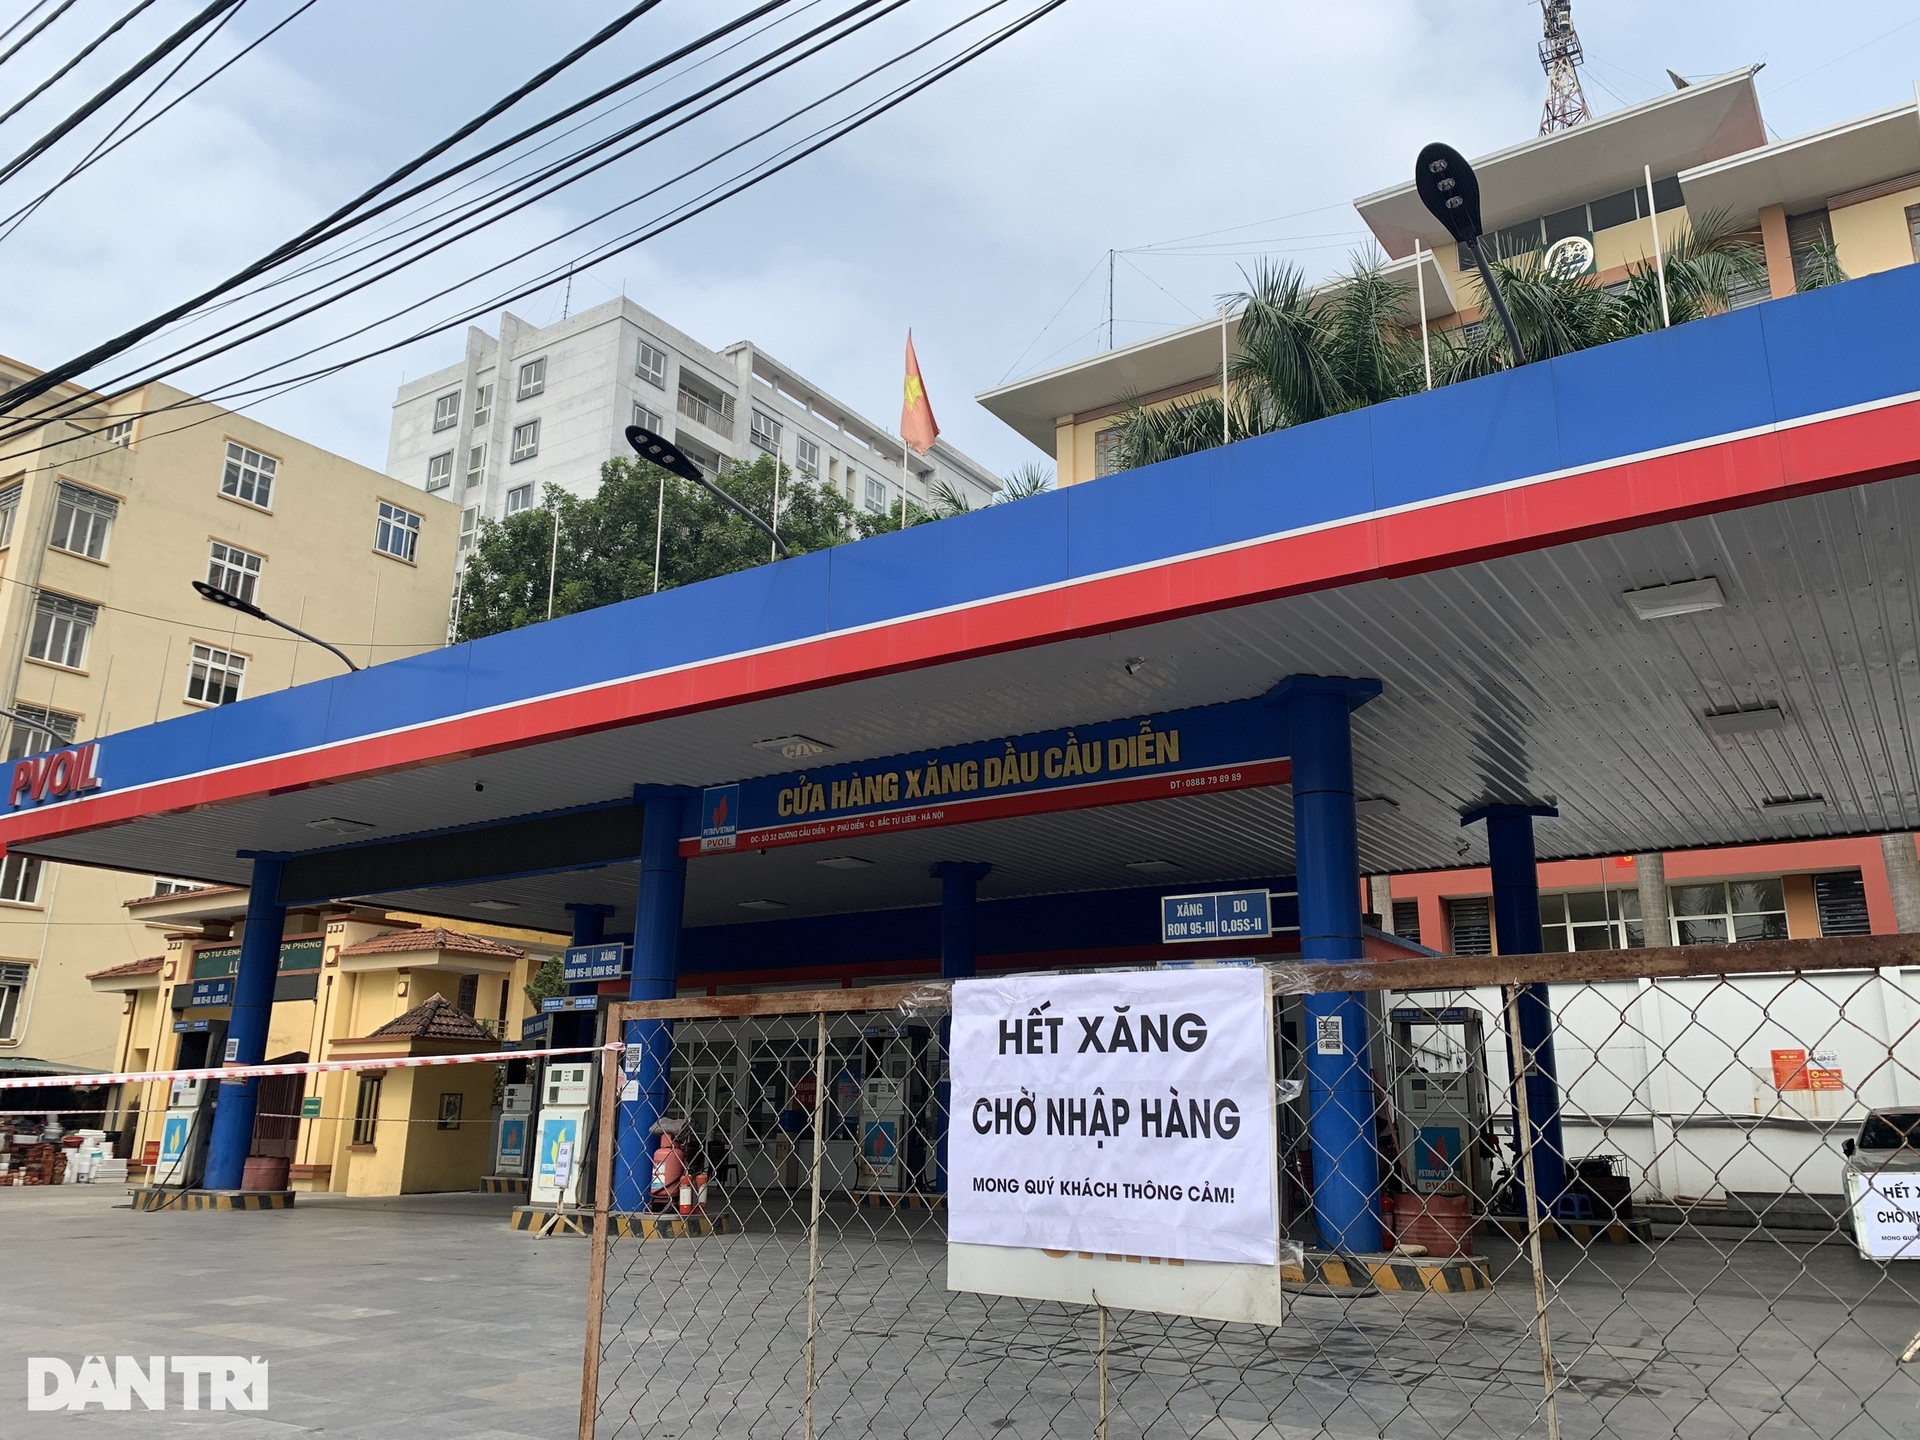 Mặc kệ giá xăng tăng, nhiều cây xăng ở Hà Nội vẫn đóng cửa im lìm - 13